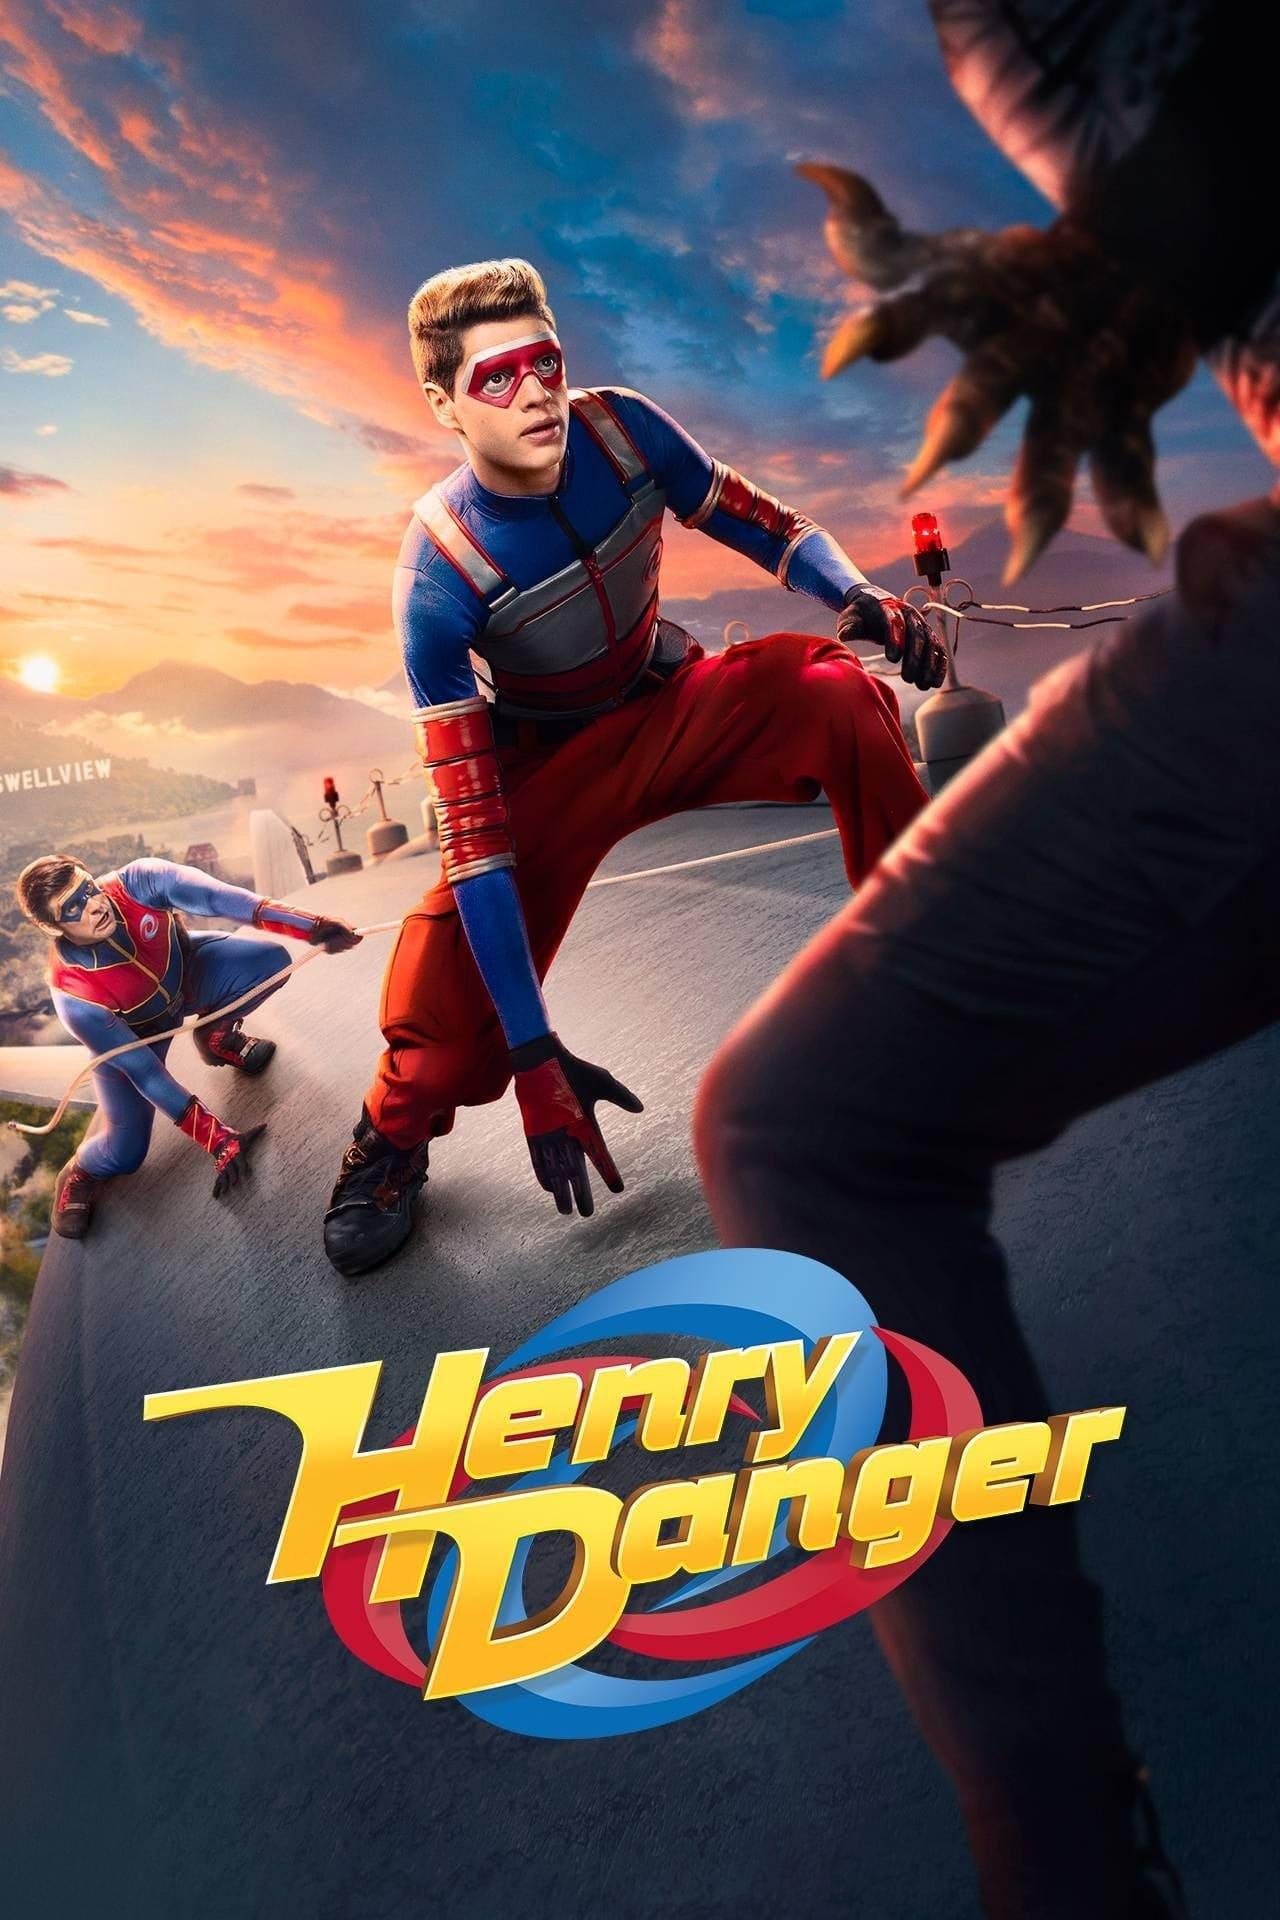 Henry Danger: The Movie poster